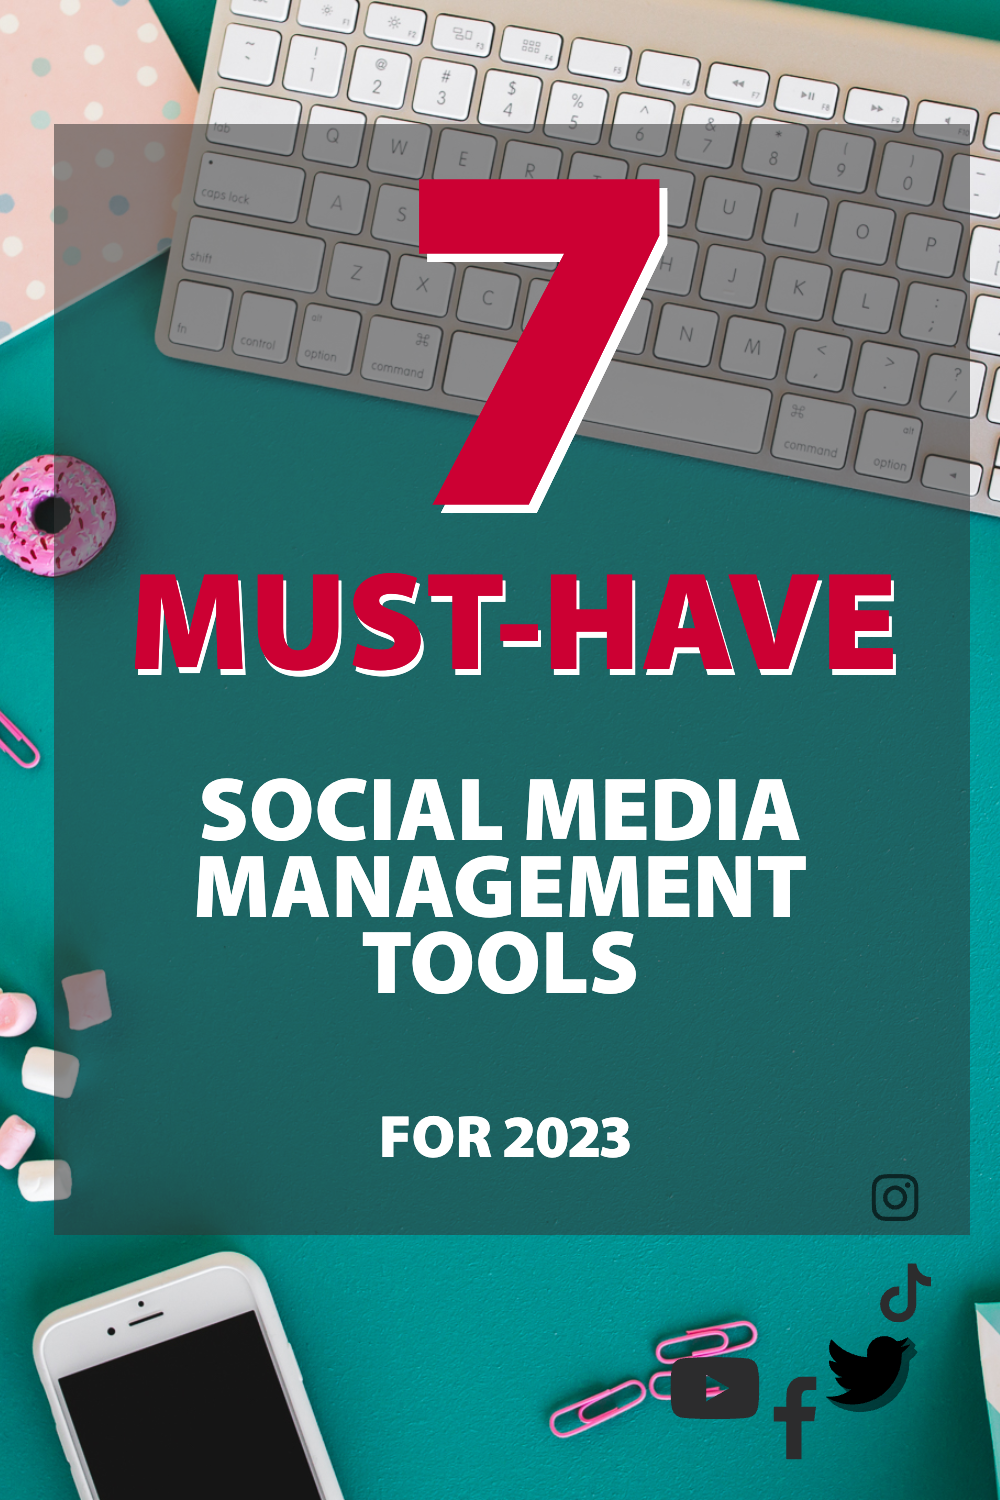 2023년 필수 소셜 미디어 관리 도구 7가지